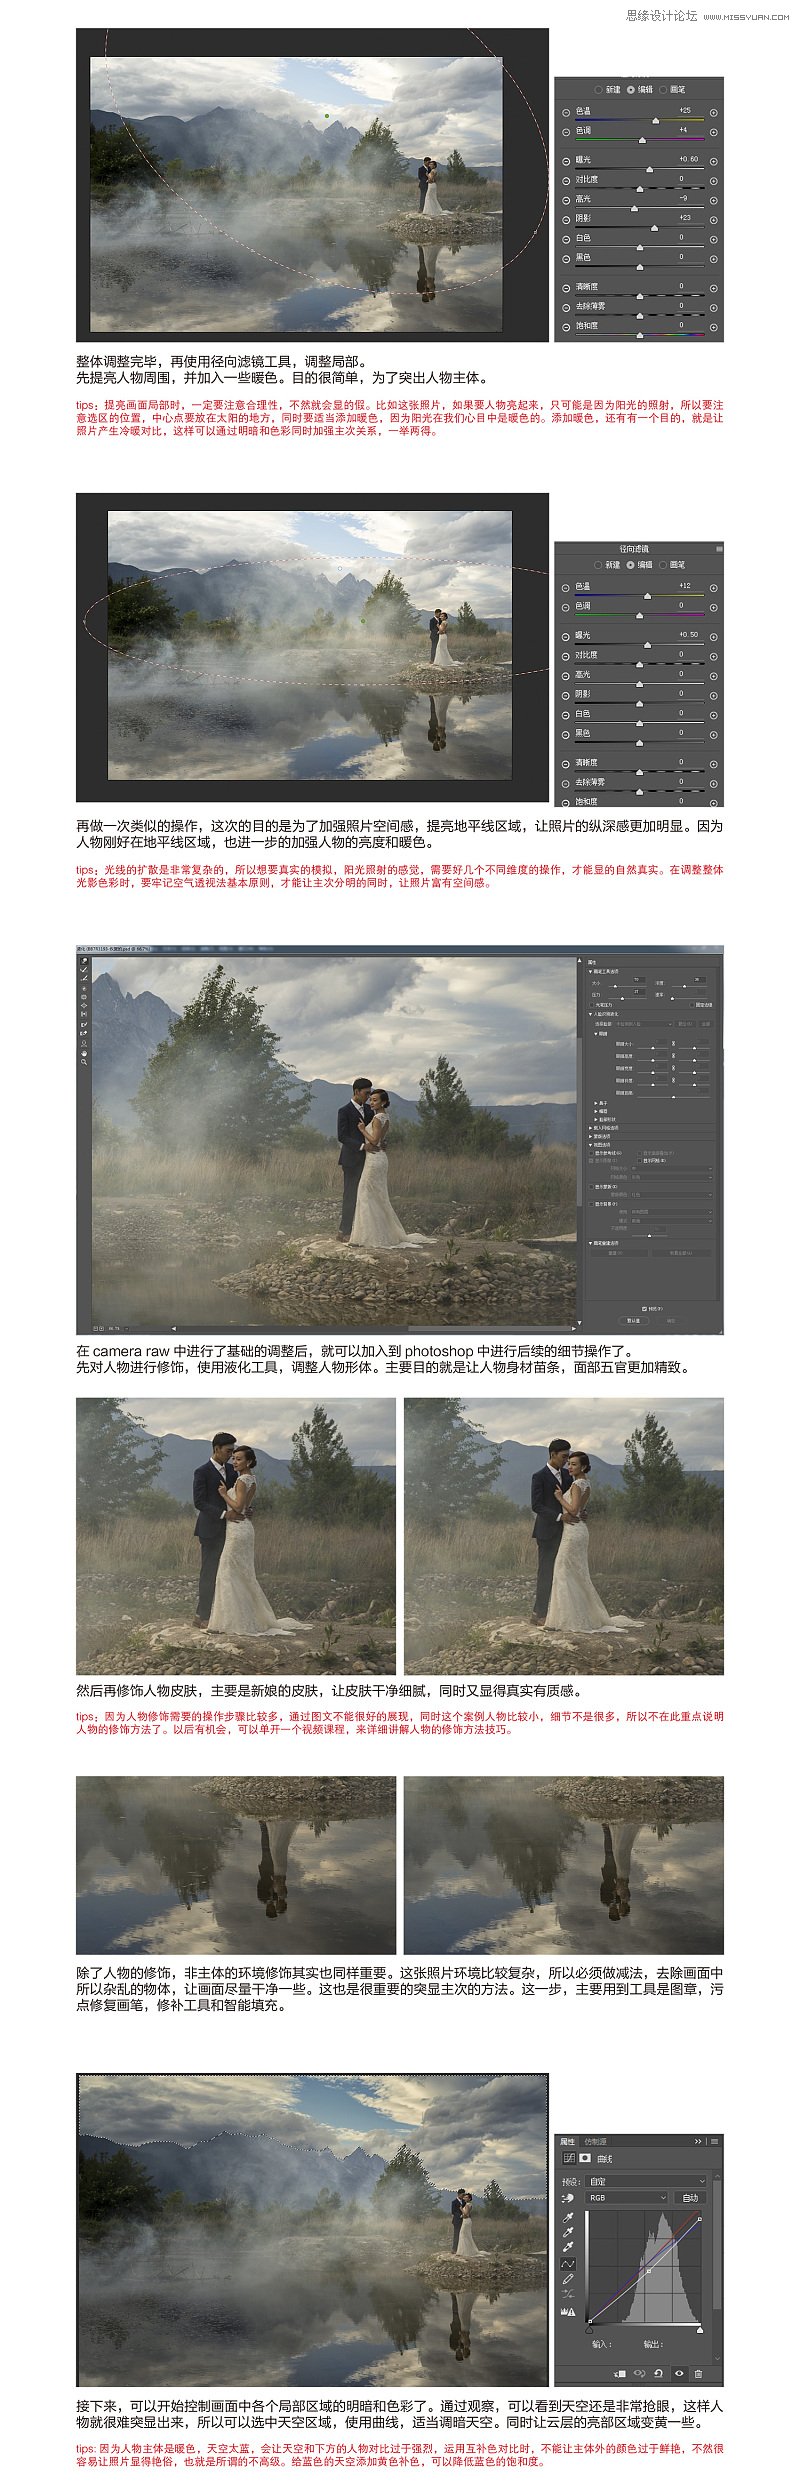 Photoshop给外景灰蒙蒙婚片增加层次感,图趣网